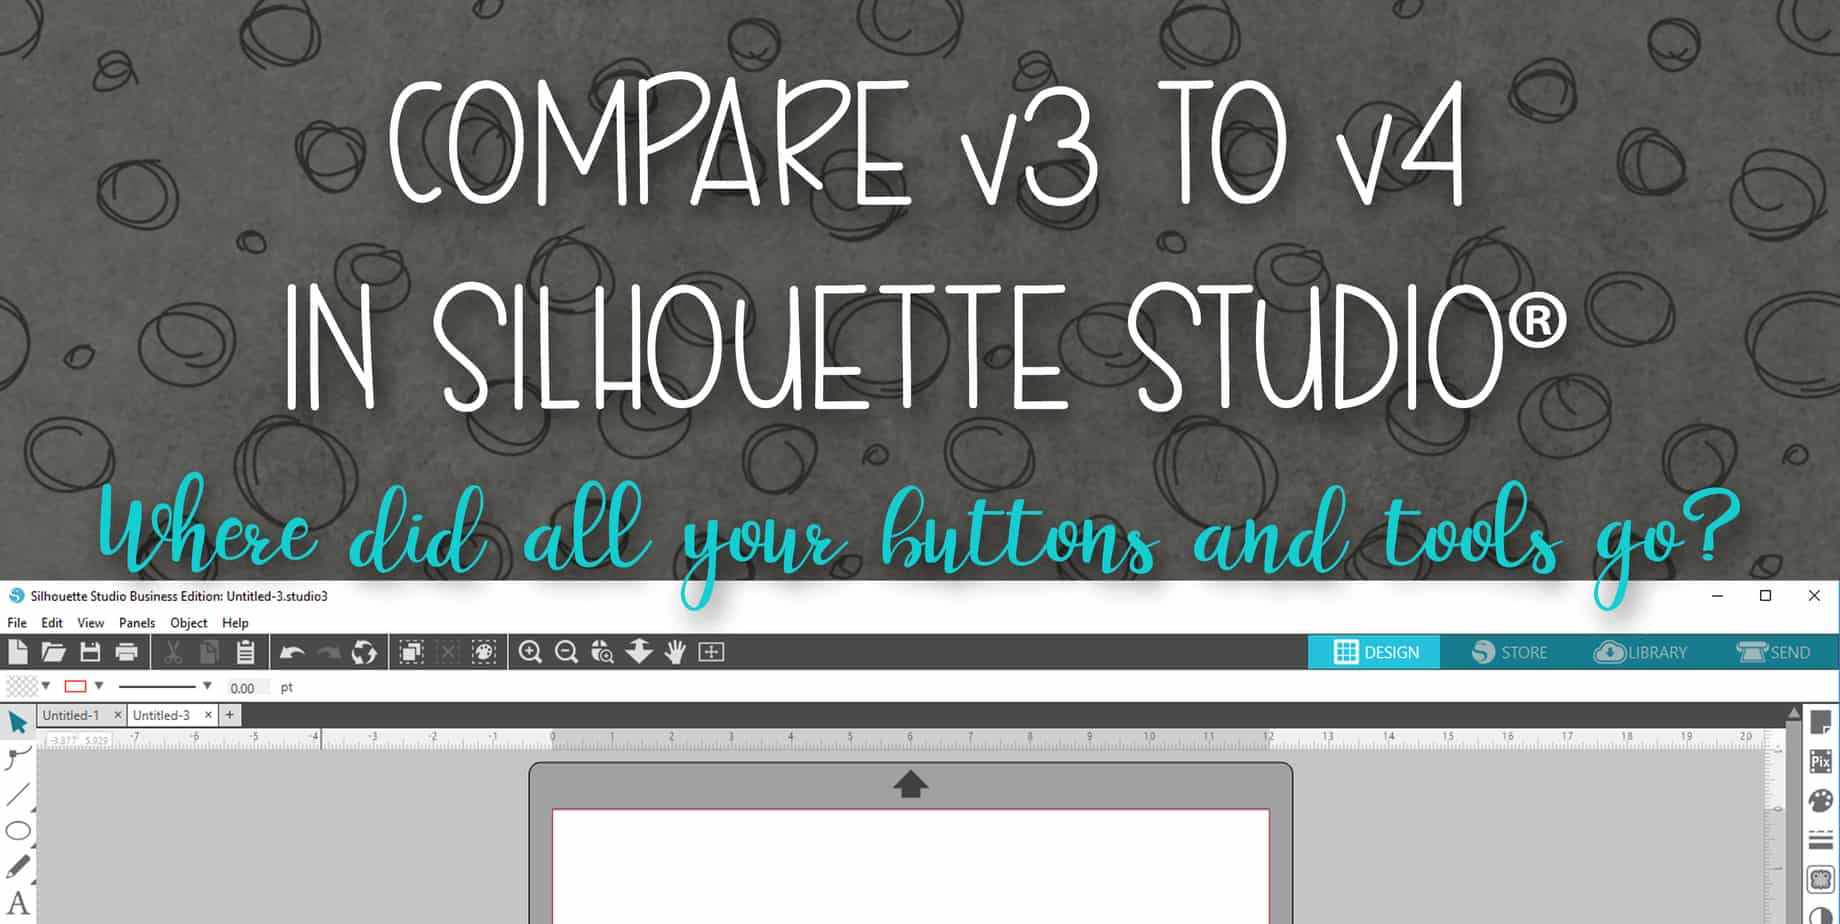 Compare v3 to v4 in Silhouette Studio